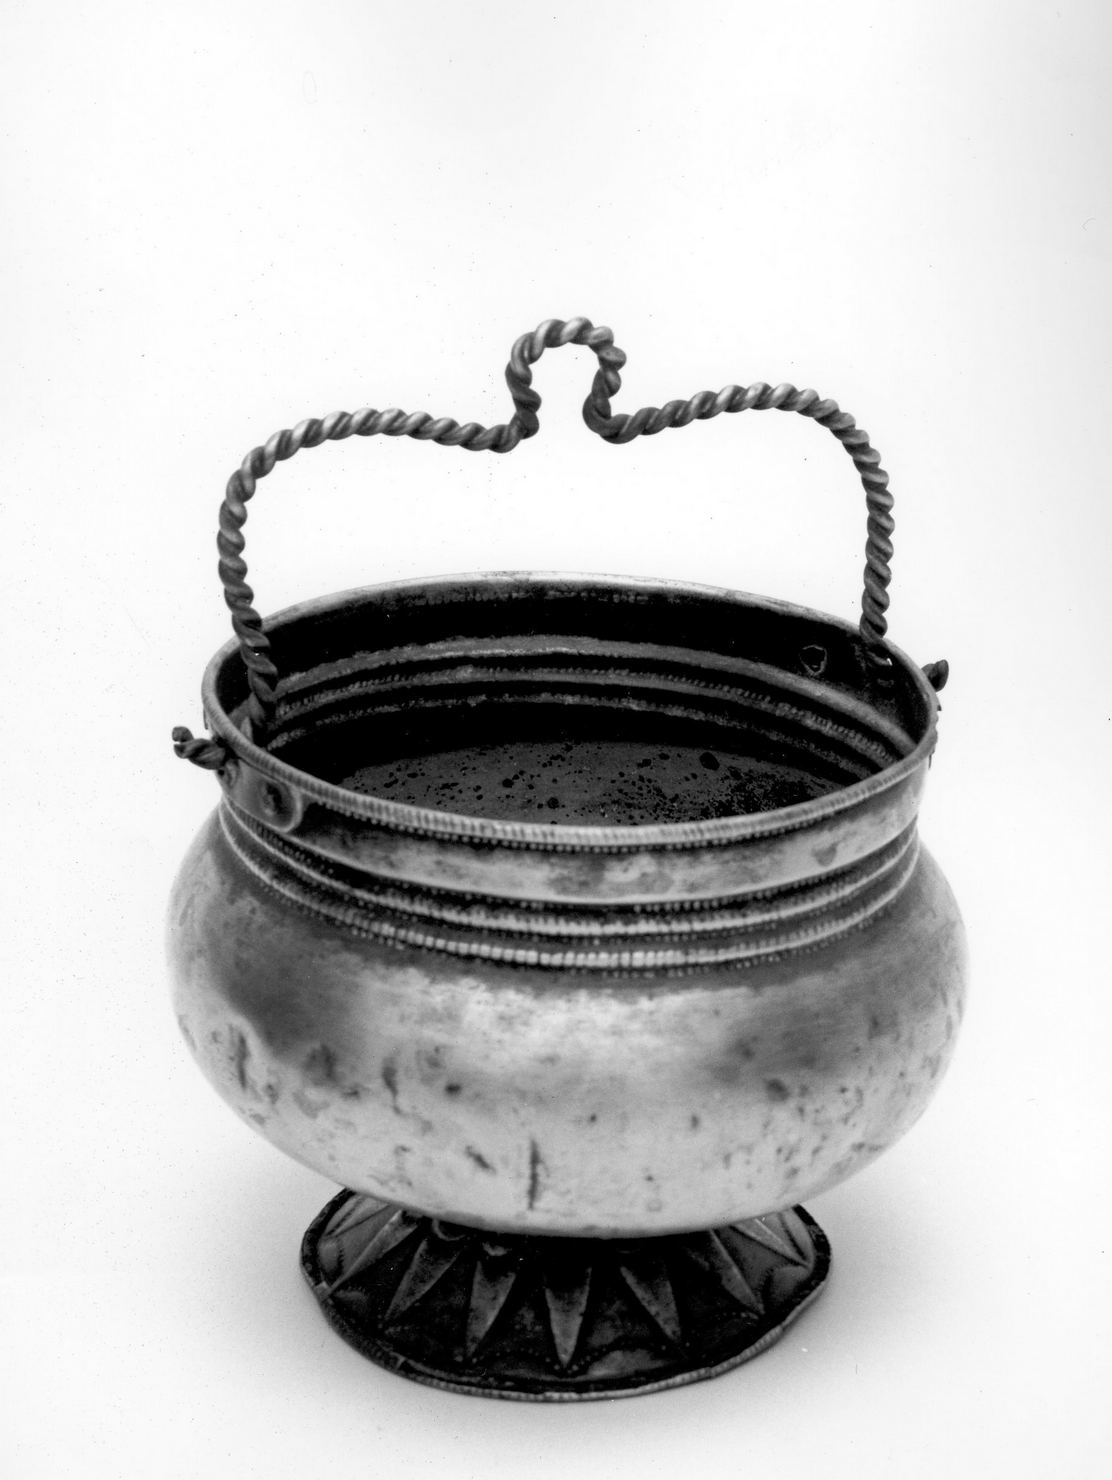 secchiello per l'acqua benedetta - bottega romana (prima metà sec. XIX)